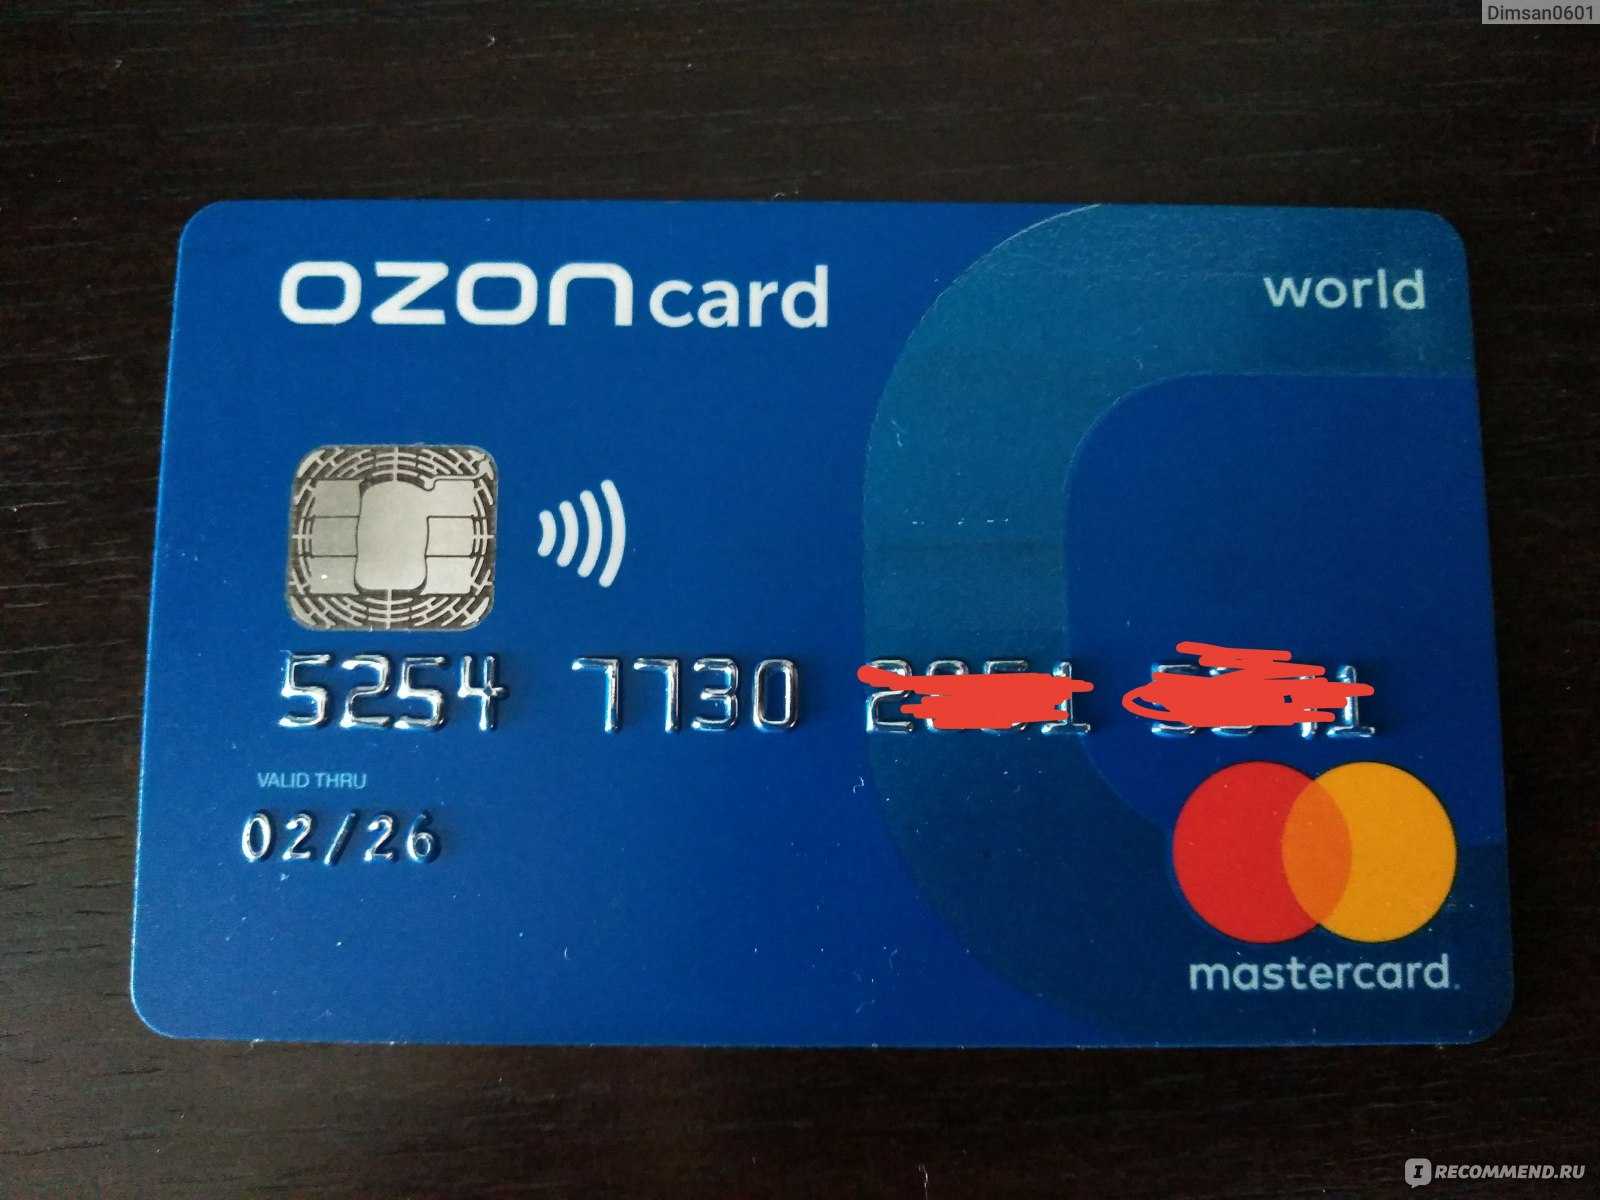 Озон карта заказать пластиковую карту кредитную